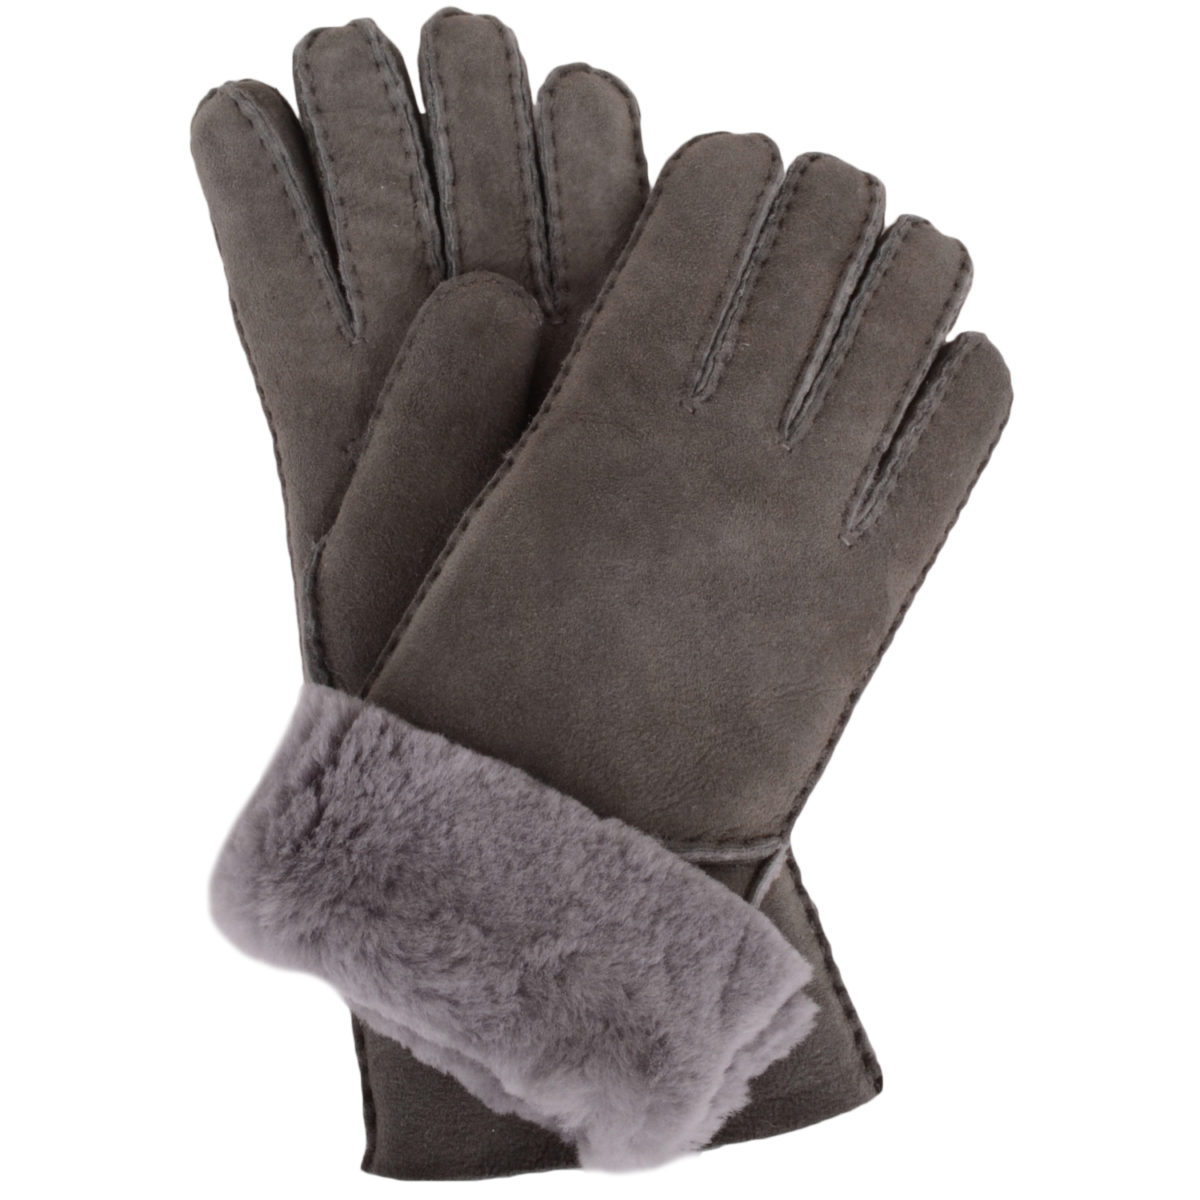 Ladies sheepskin gloves uk